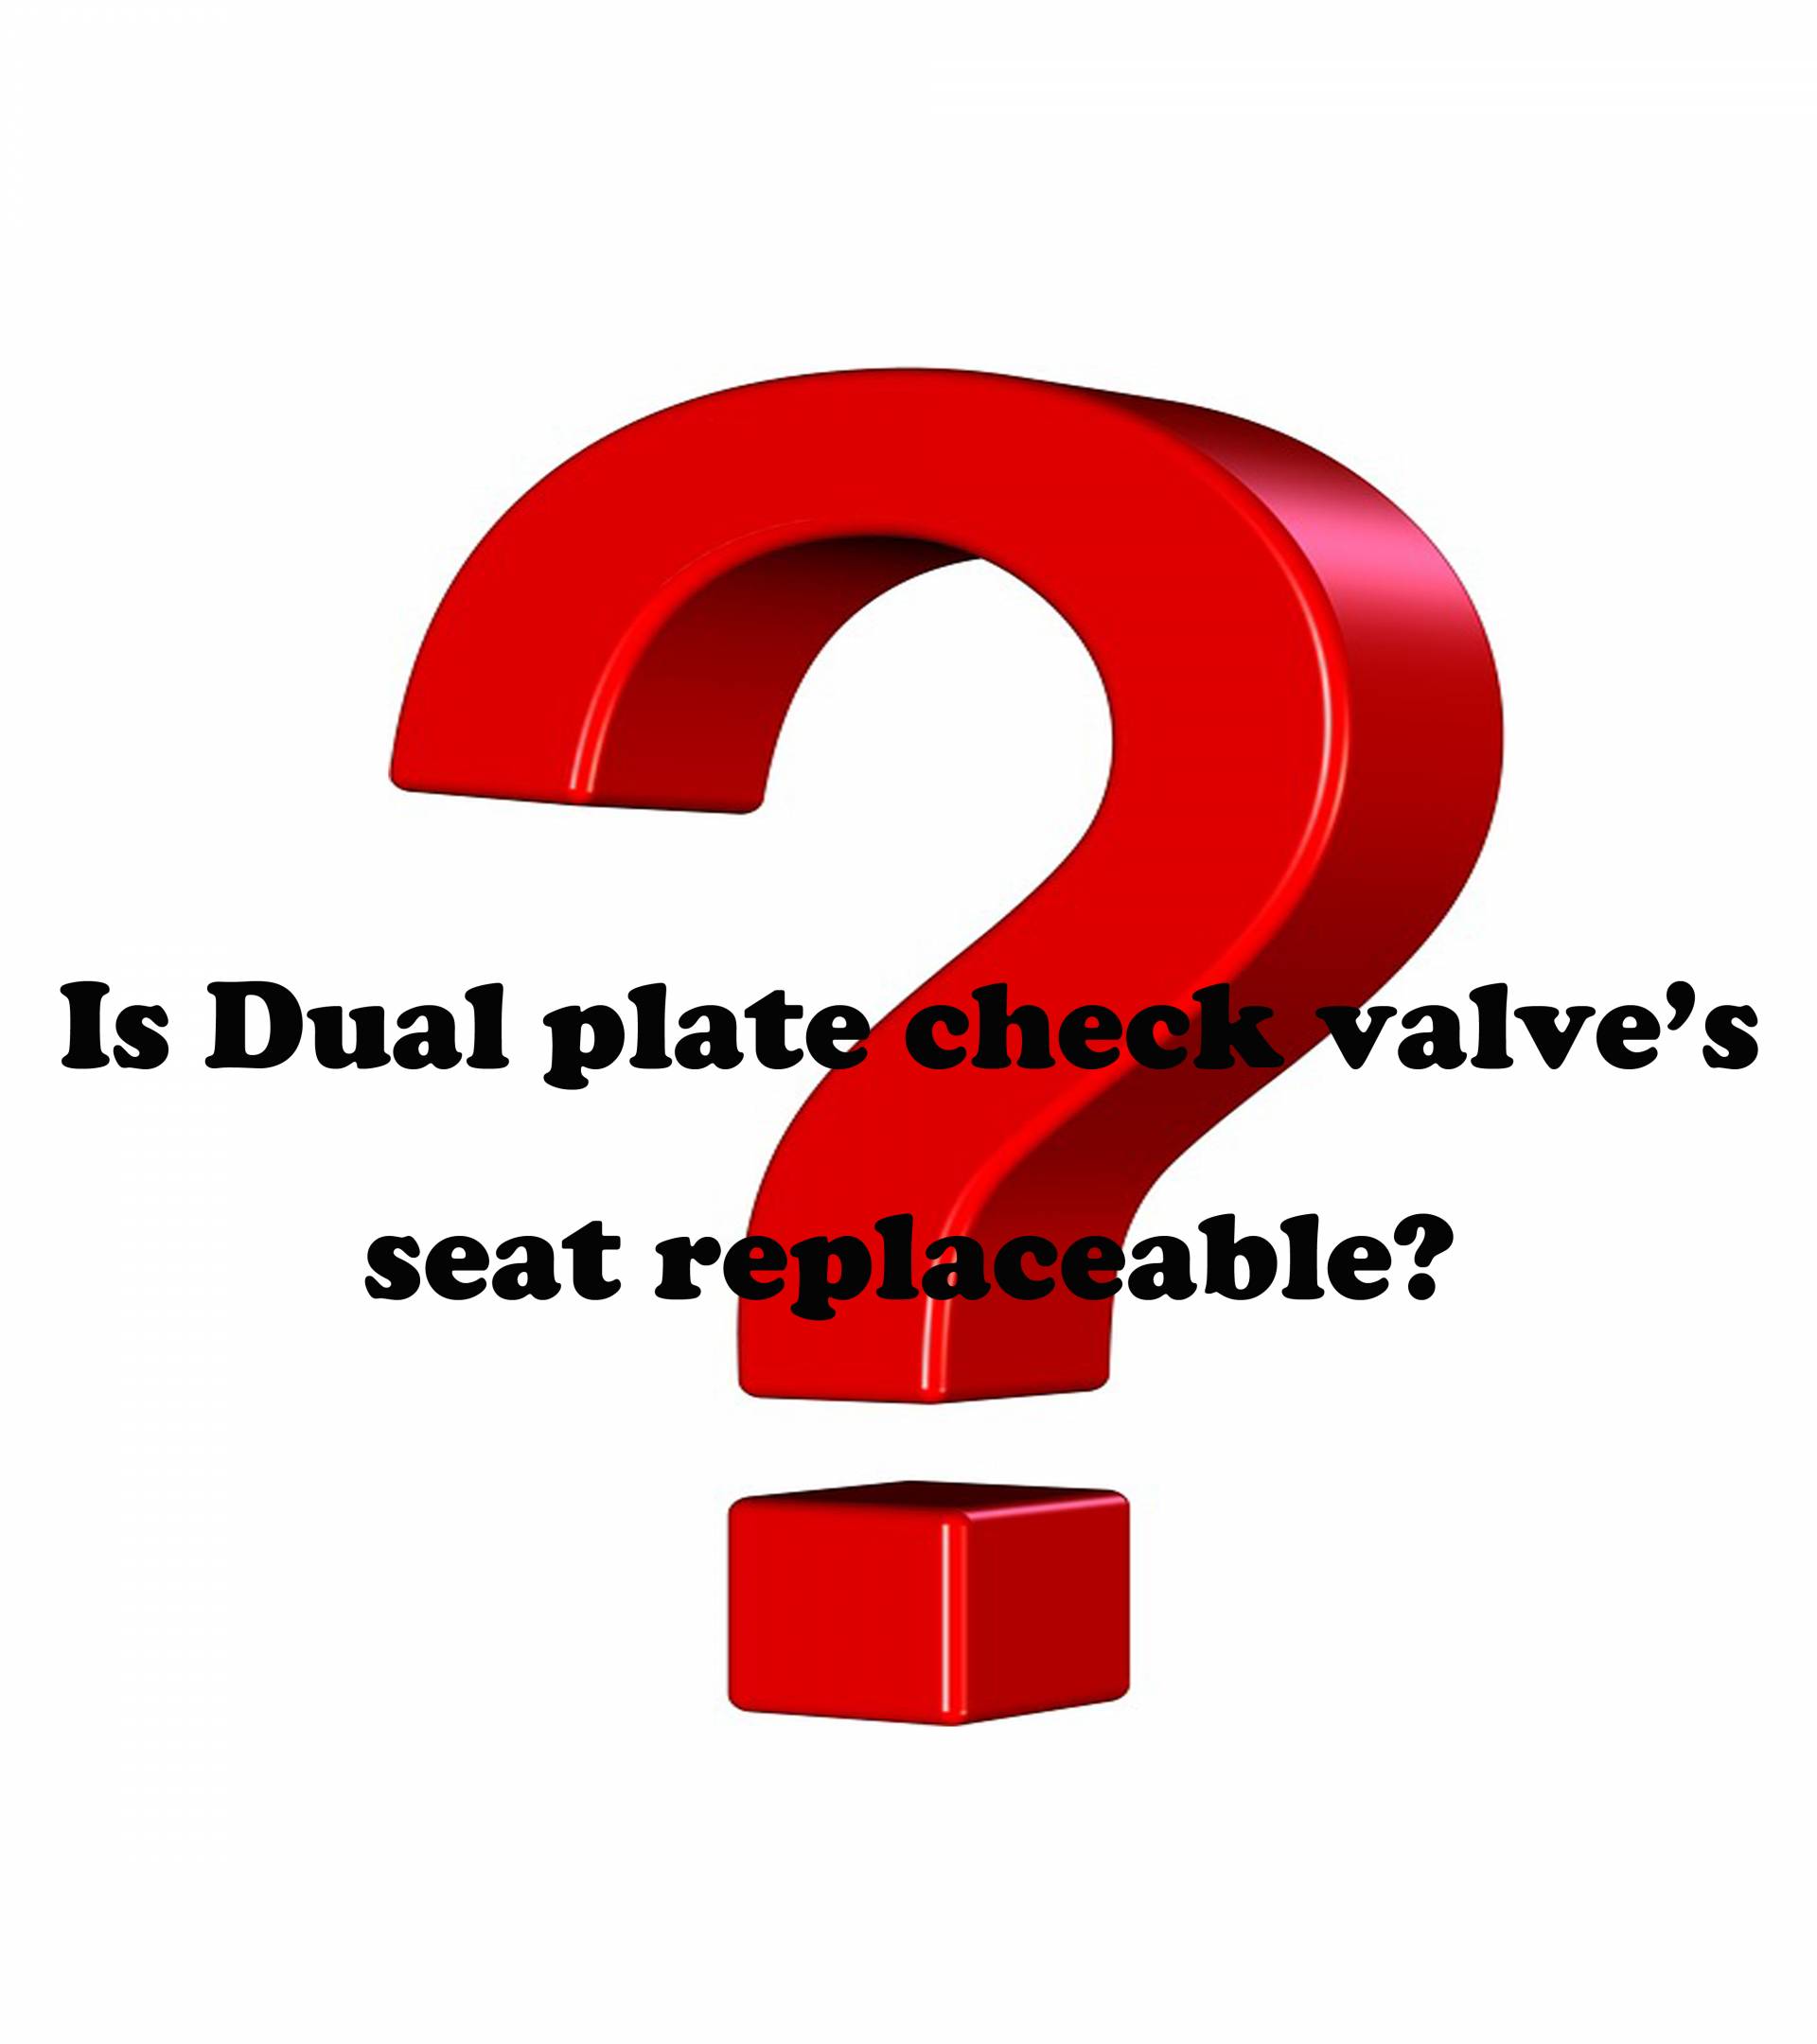 O assento da válvula de retenção de dupla placa é substituível?